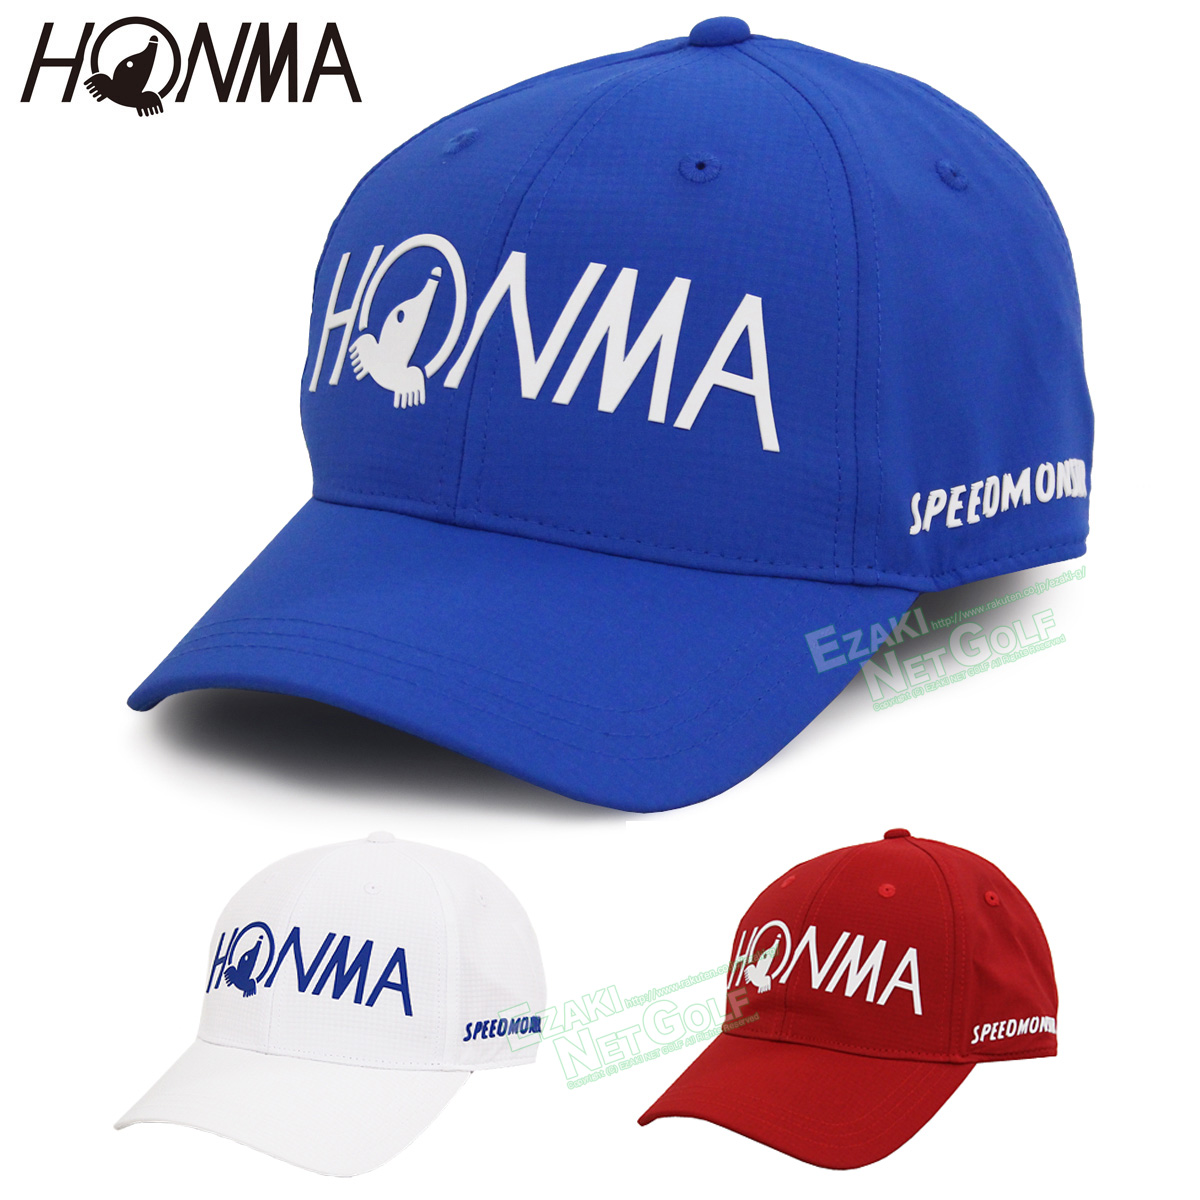 HONMA 帽子